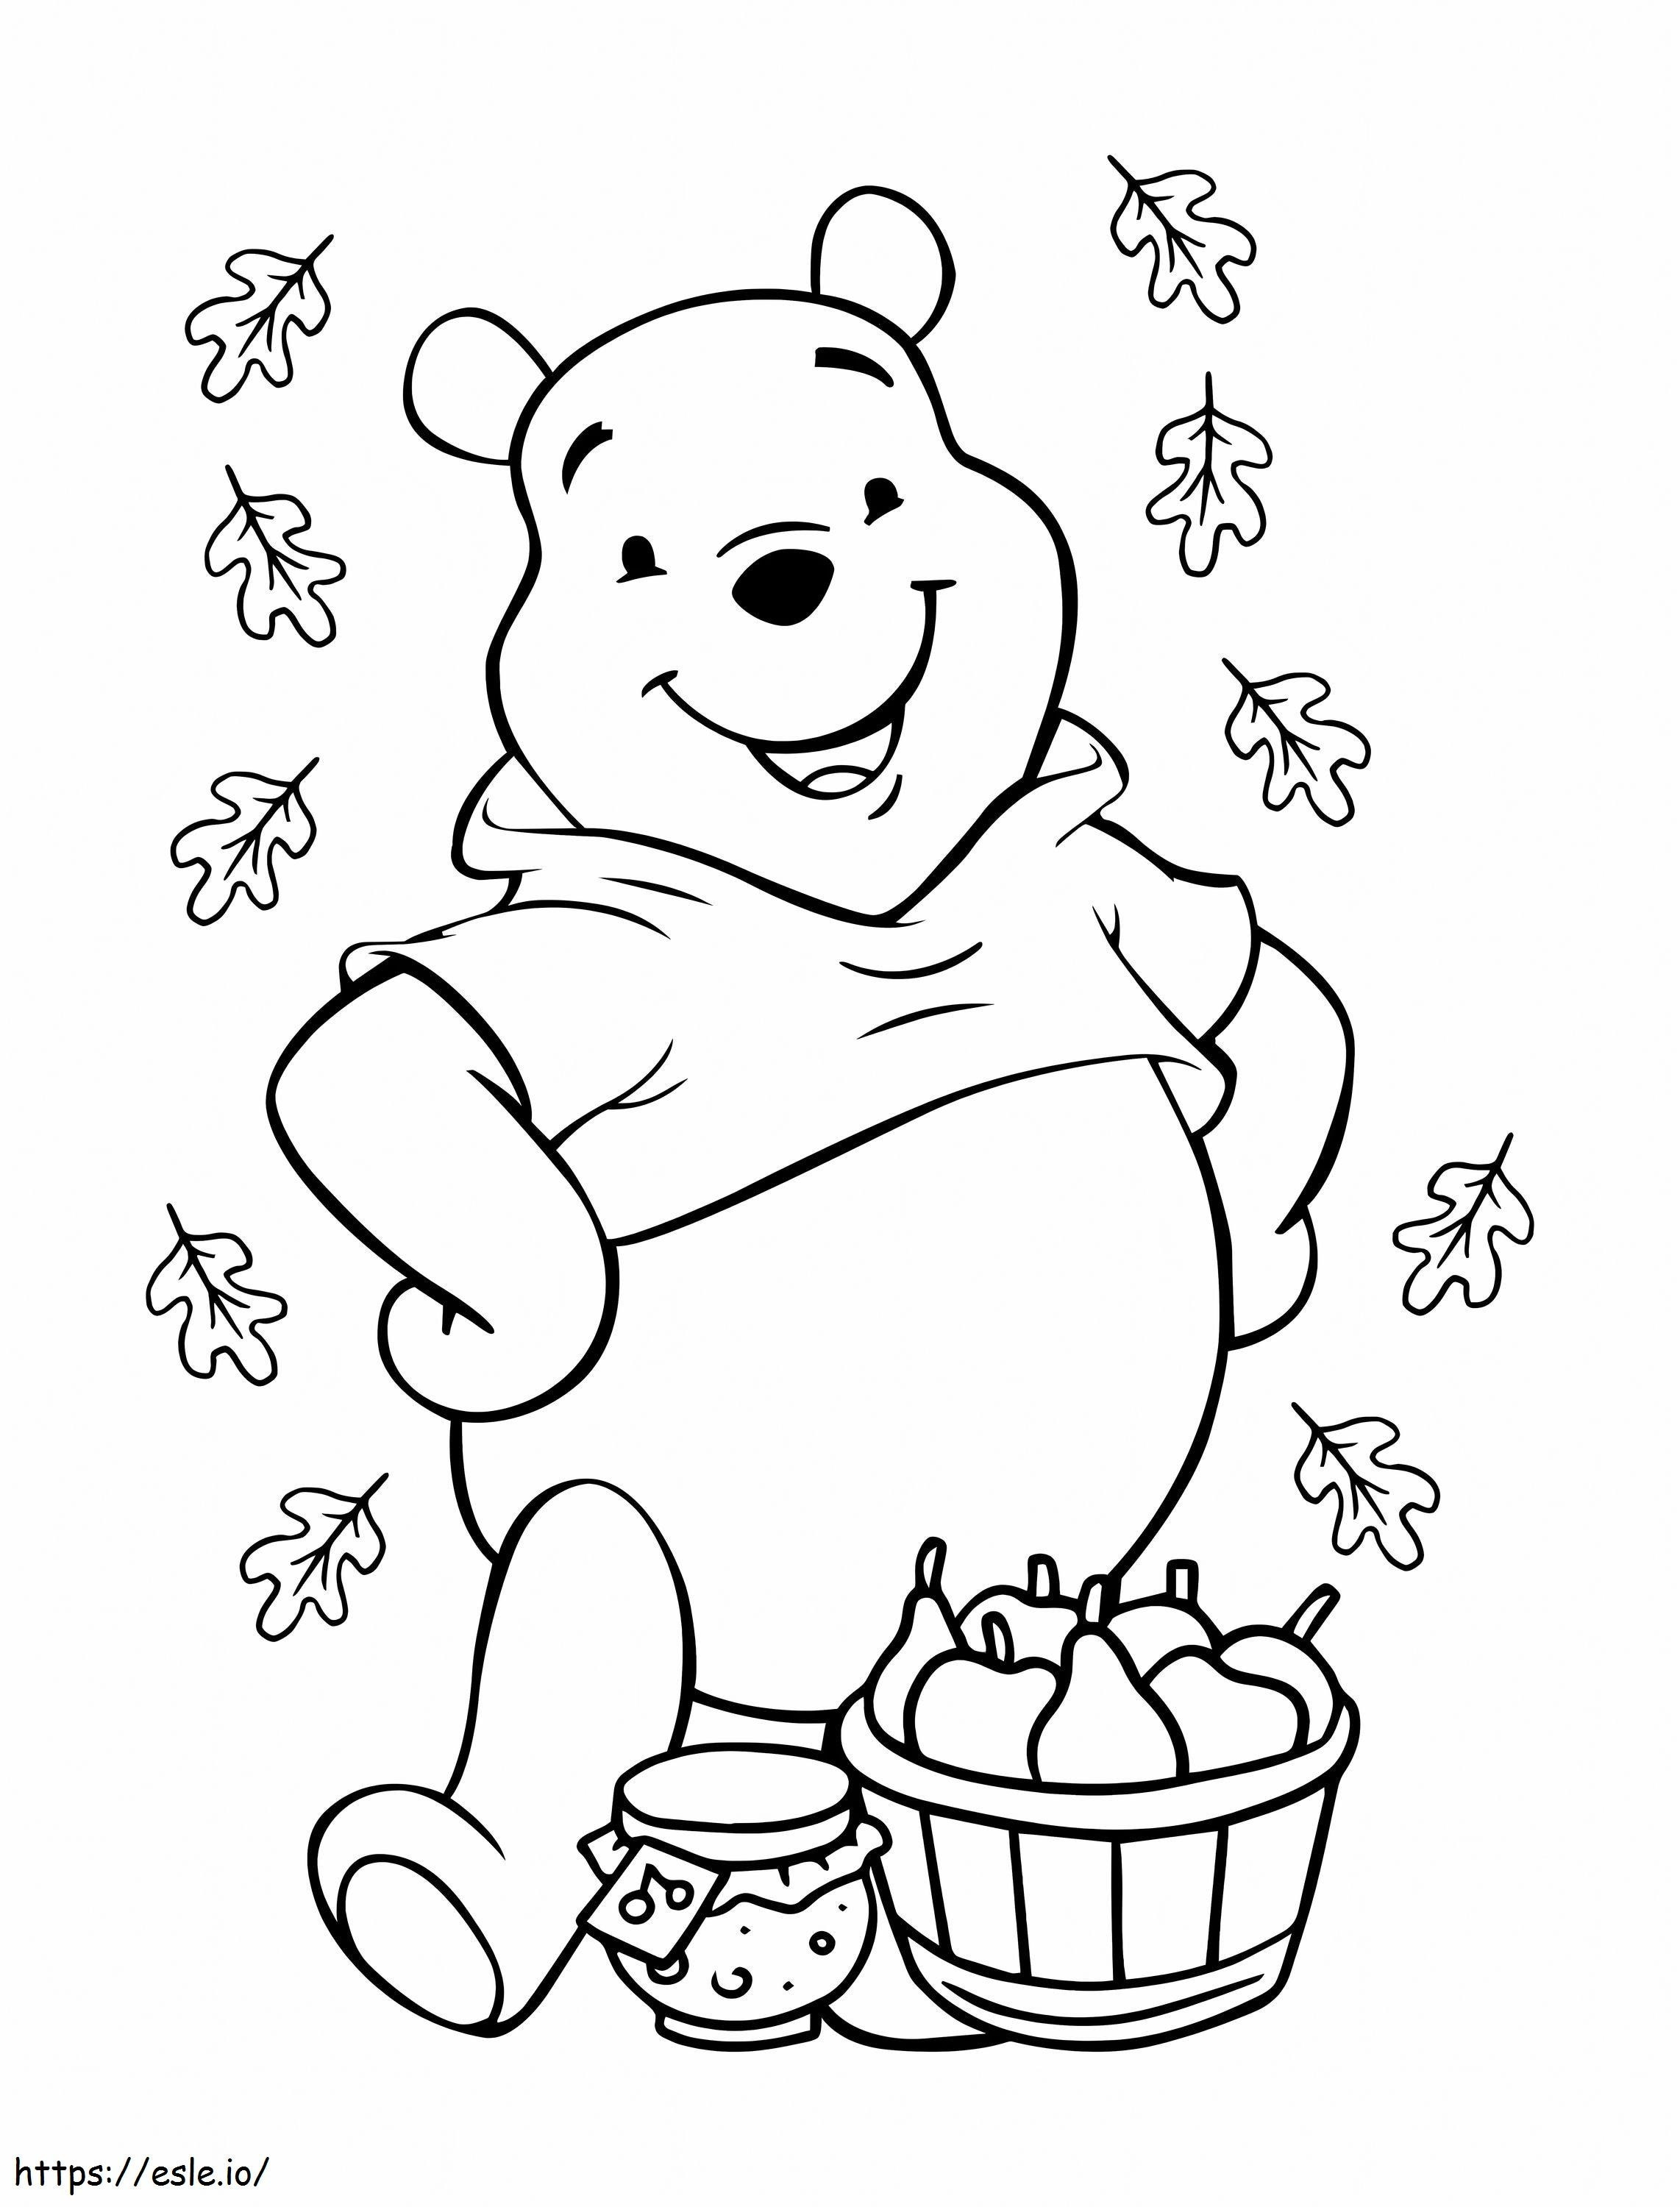 El oso Pooh Disney para colorear